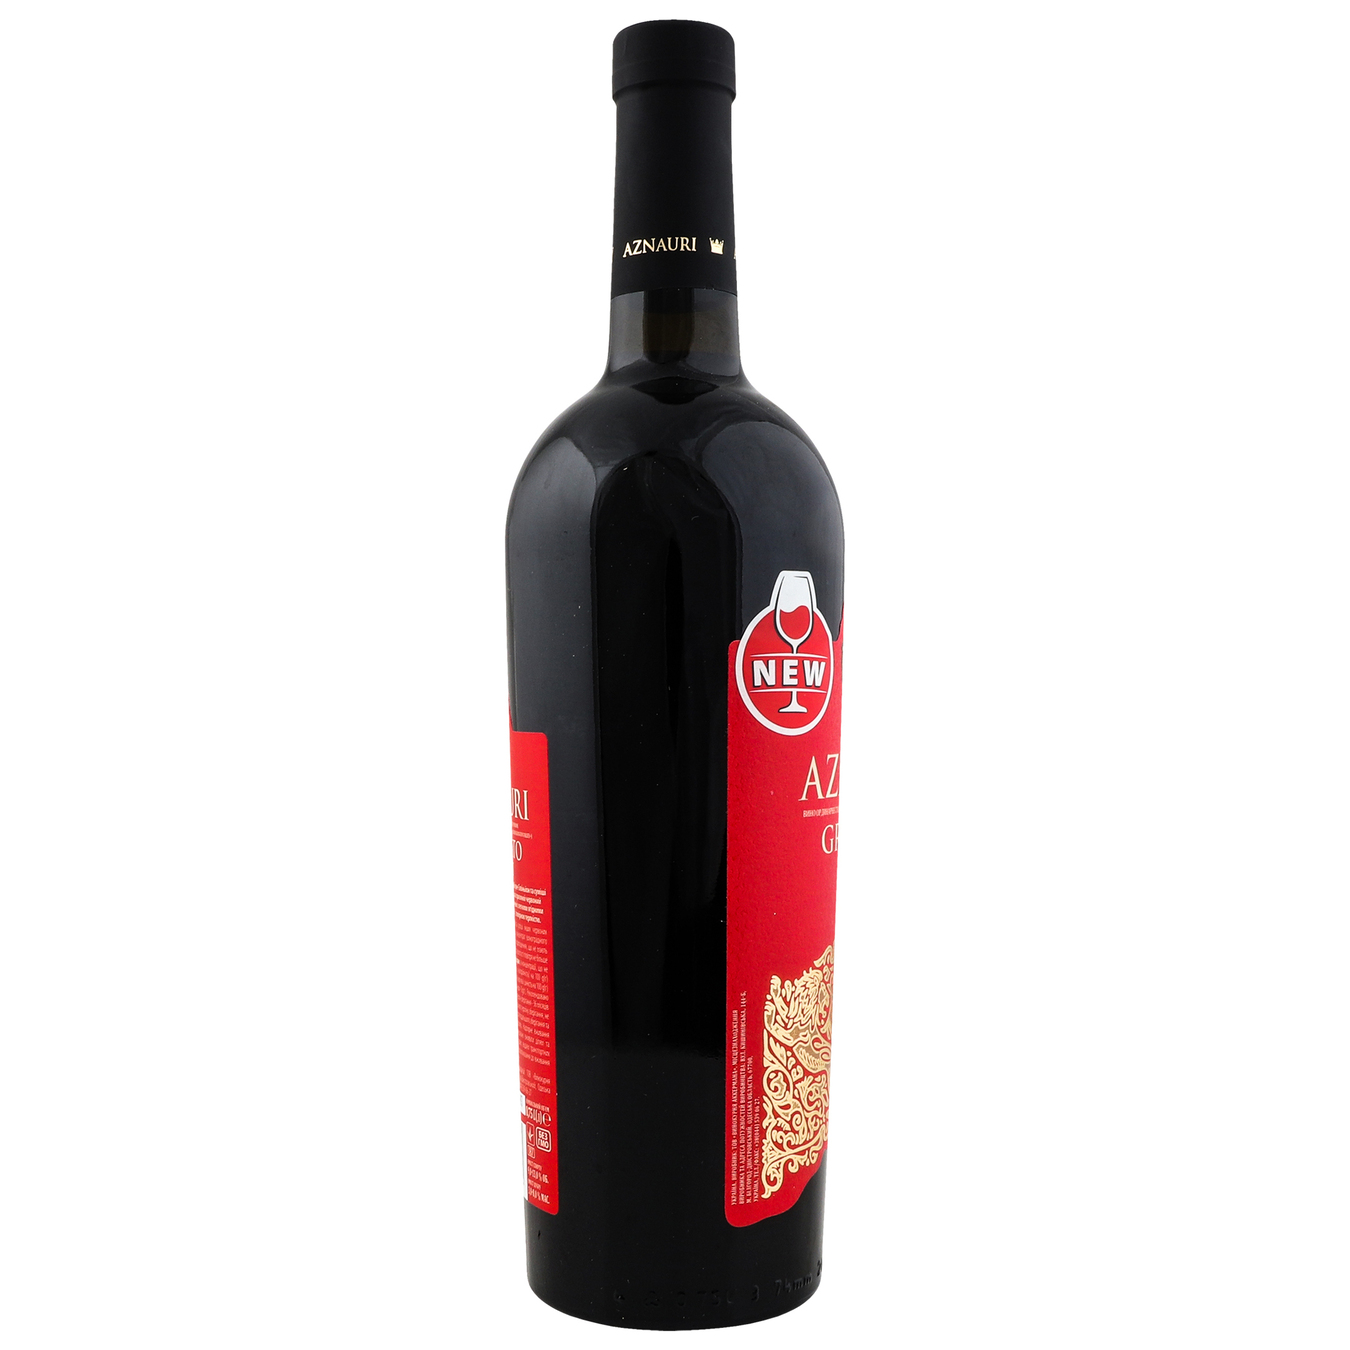 Вино Aznauri Granato Valley червоне напівсолодке 13% 0,75л 4